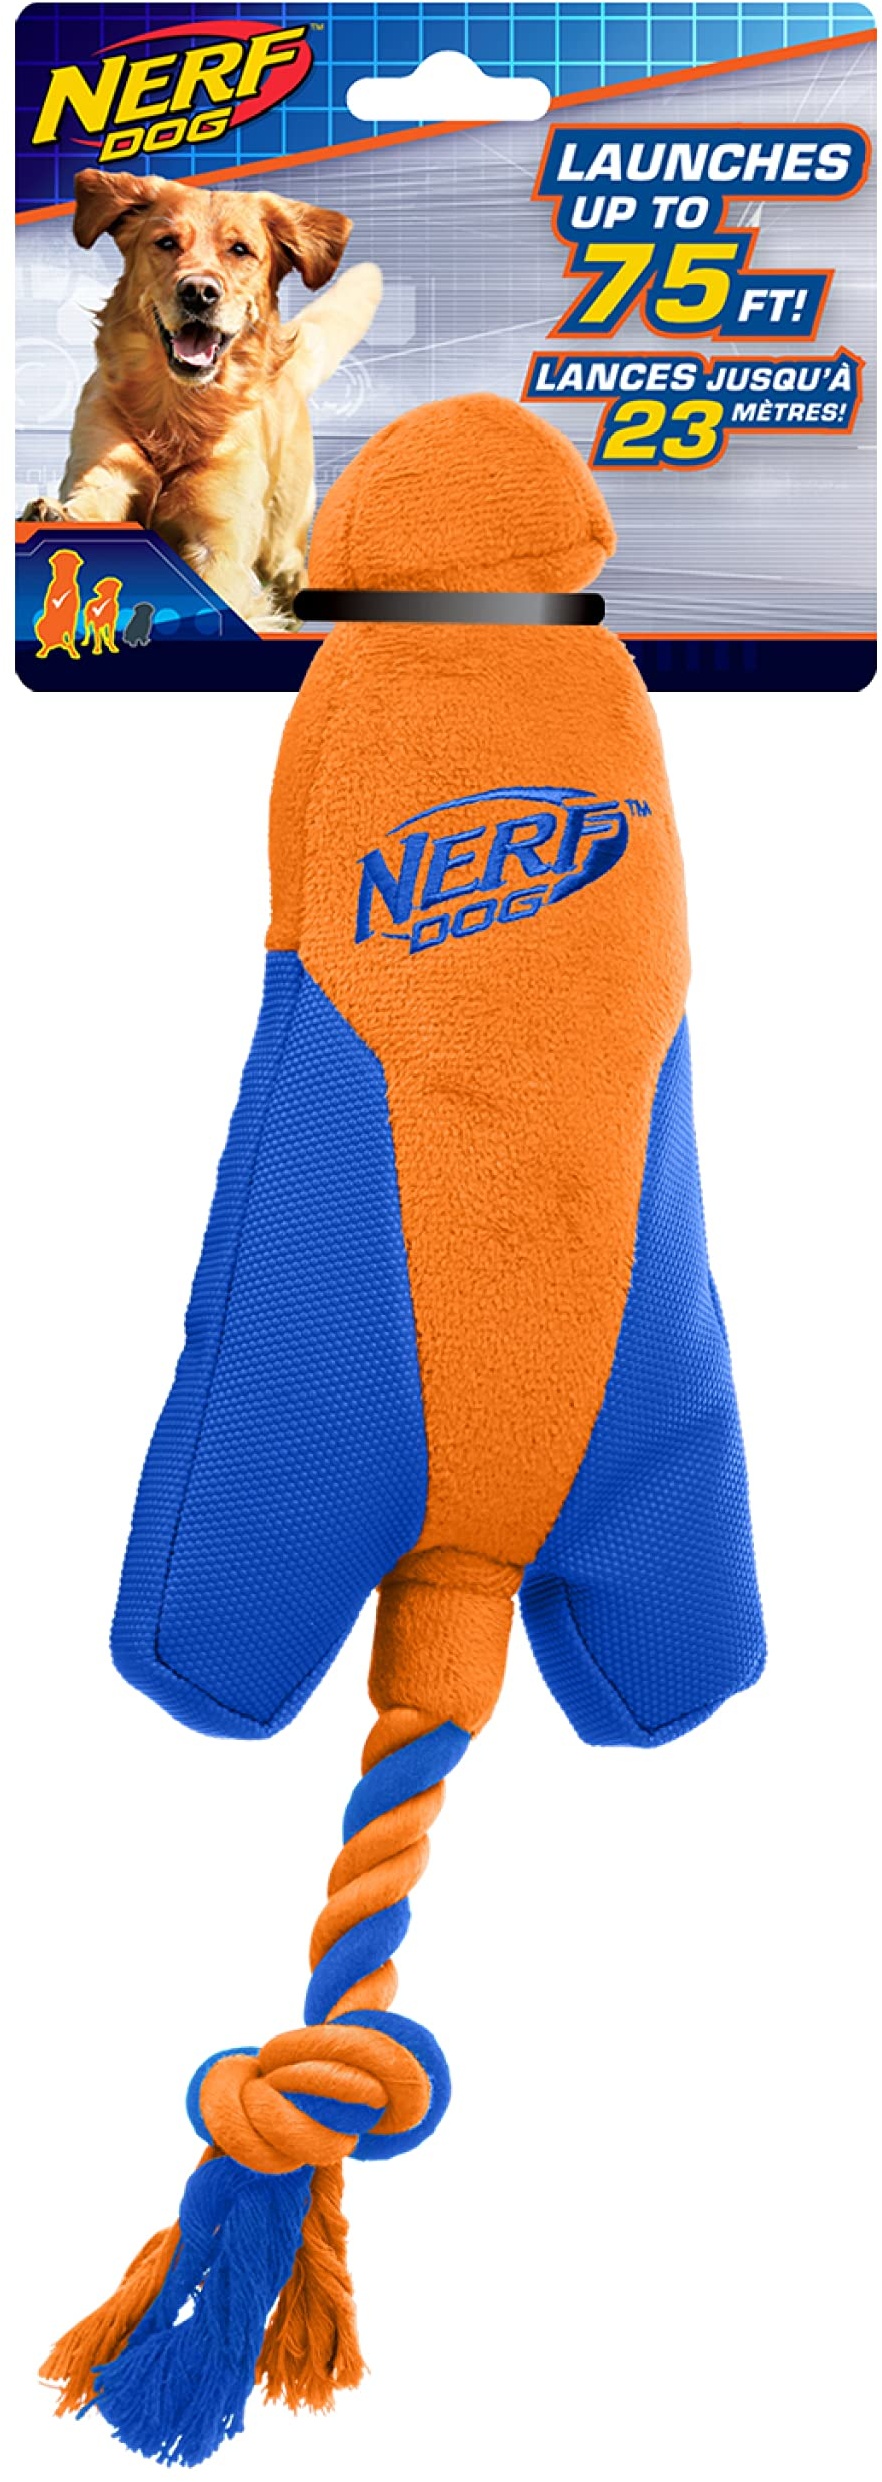 Nerf Dog Trackshot Pfeilspitzen-Launcher mit interaktivem Design, ideal zum Apportieren, Launches bis zu 22,9 m, Einzeleinheit, blau/orange